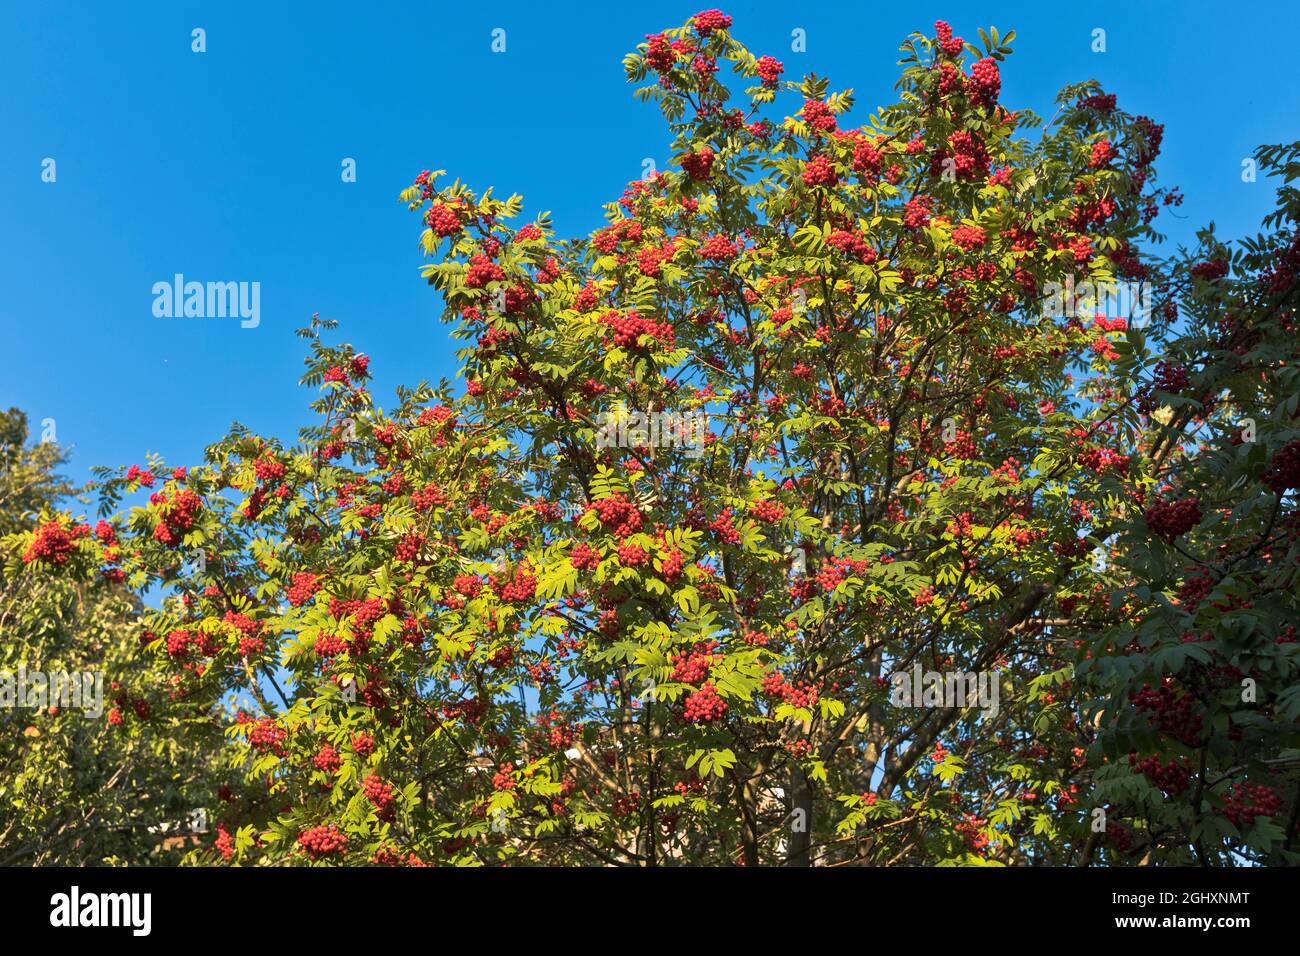 dh fruit rouge ROWAN BERRY FLORE ARBRES arbre d'été avec baies écosse uk couleur rouges feuillage branche feuchée Banque D'Images